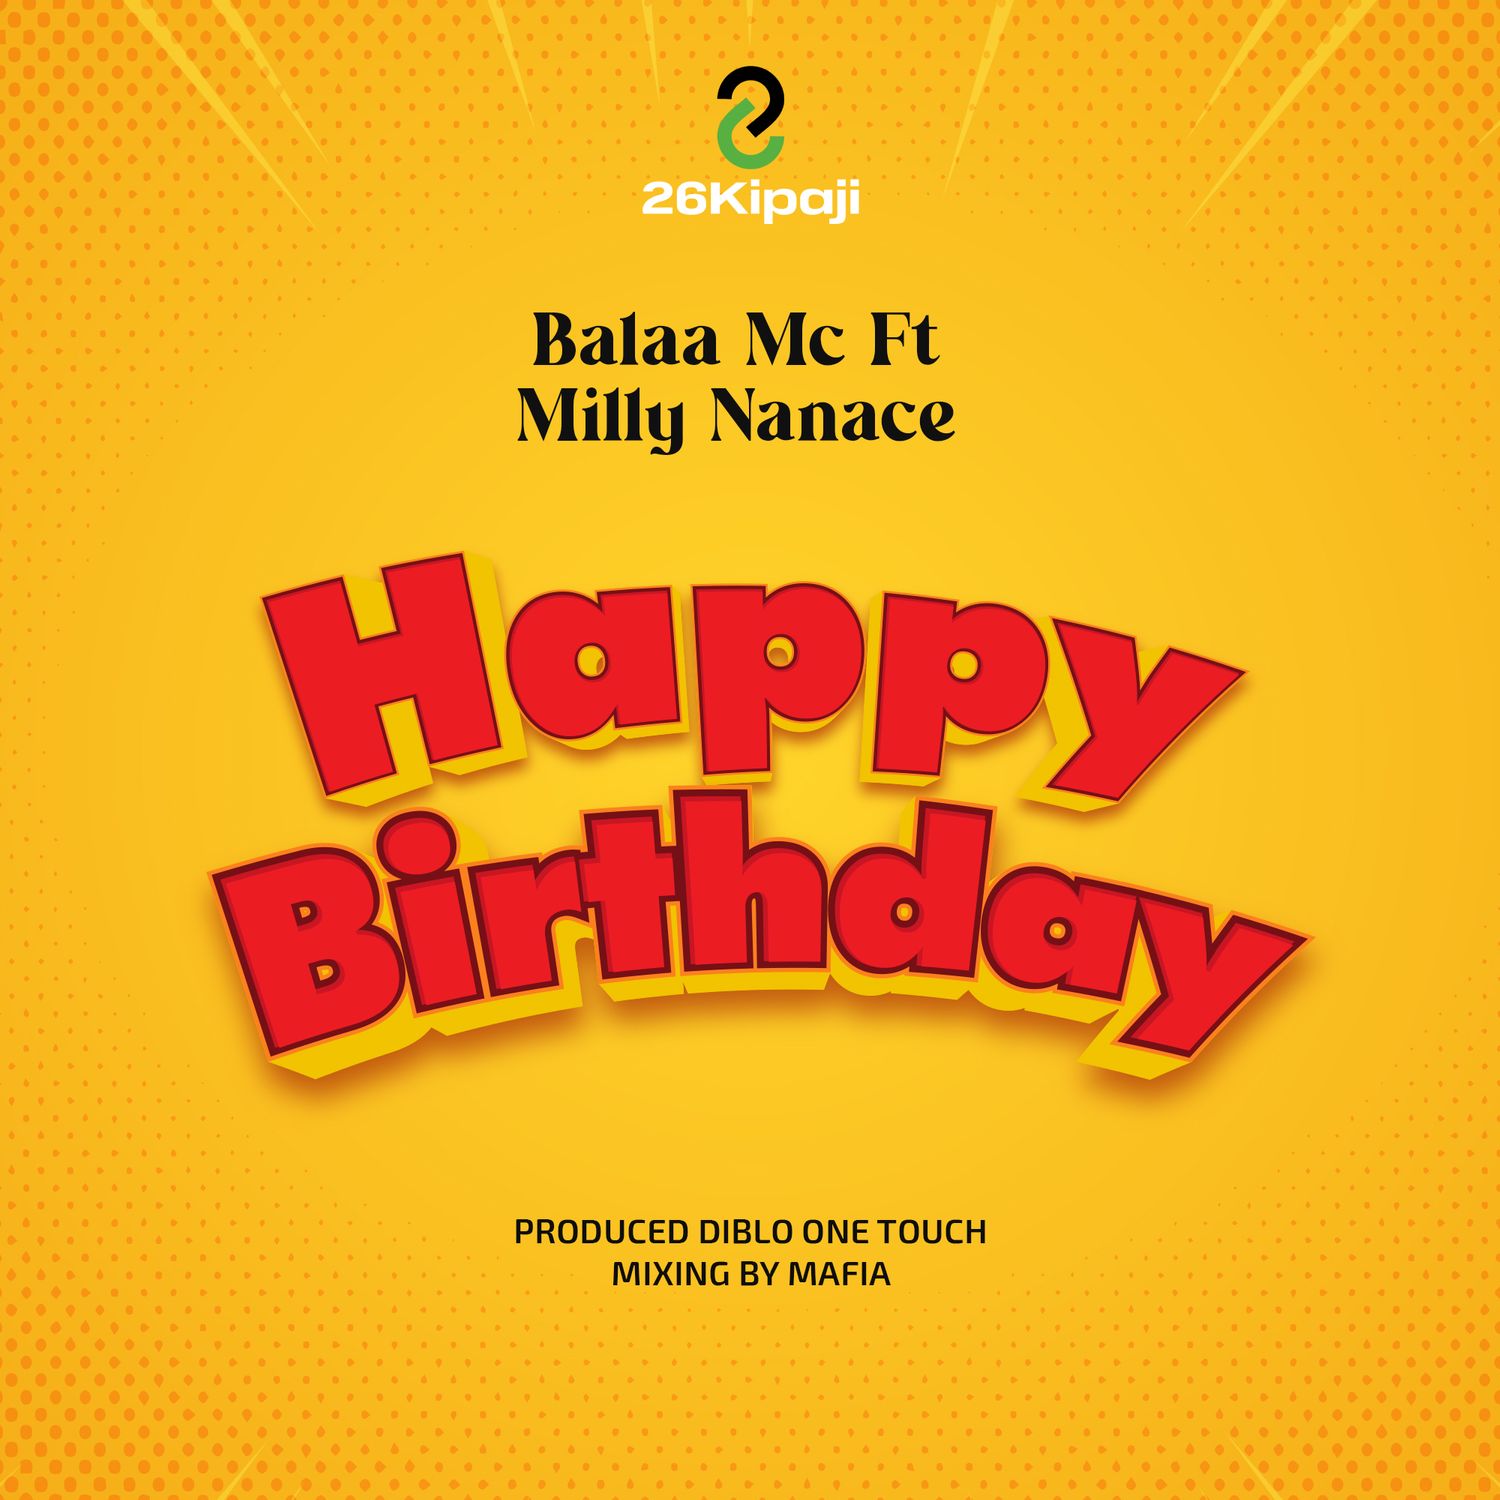 Balaa Mc Ft Milly Nanace - Happy Birthday